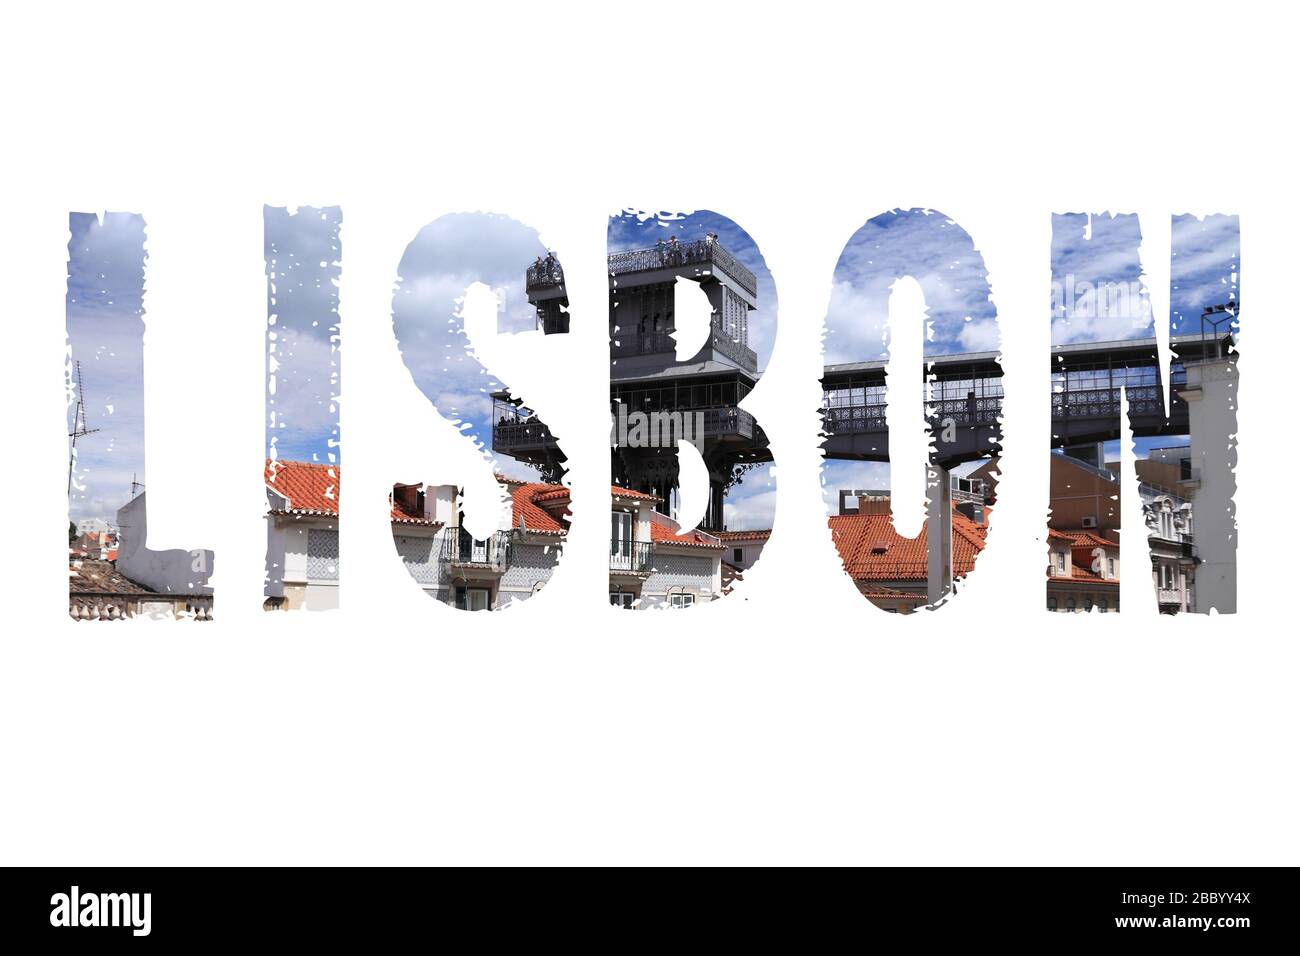 Signe mot Lisbonne - Portugal capitale nom de la ville avec fond Voyage carte postale photo. Banque D'Images